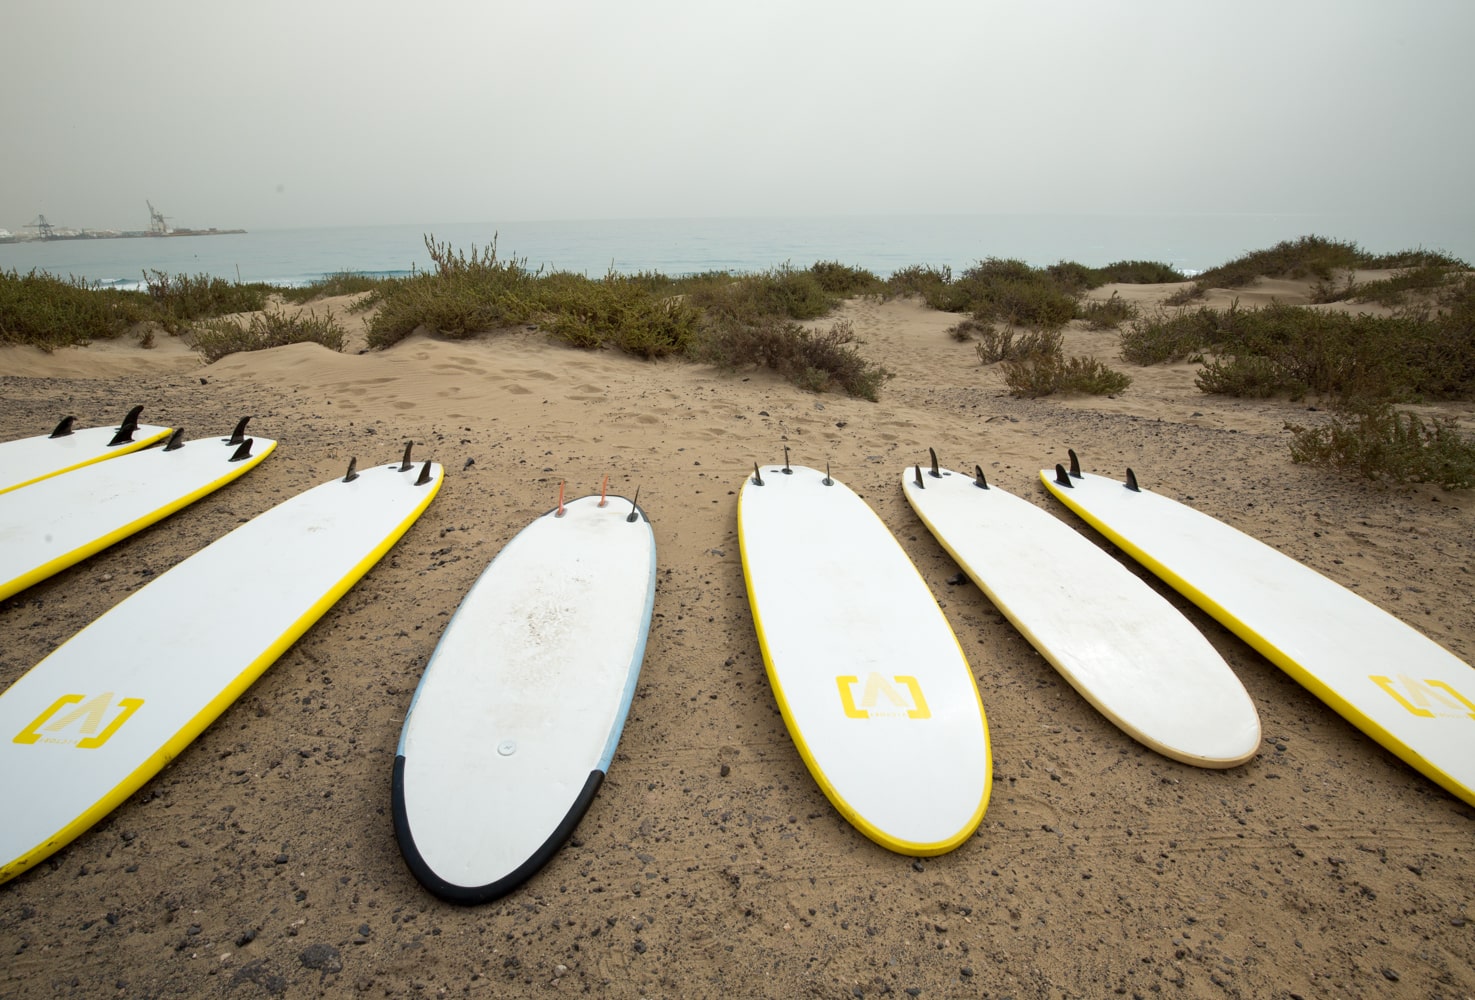 surf boards on a sandy beach